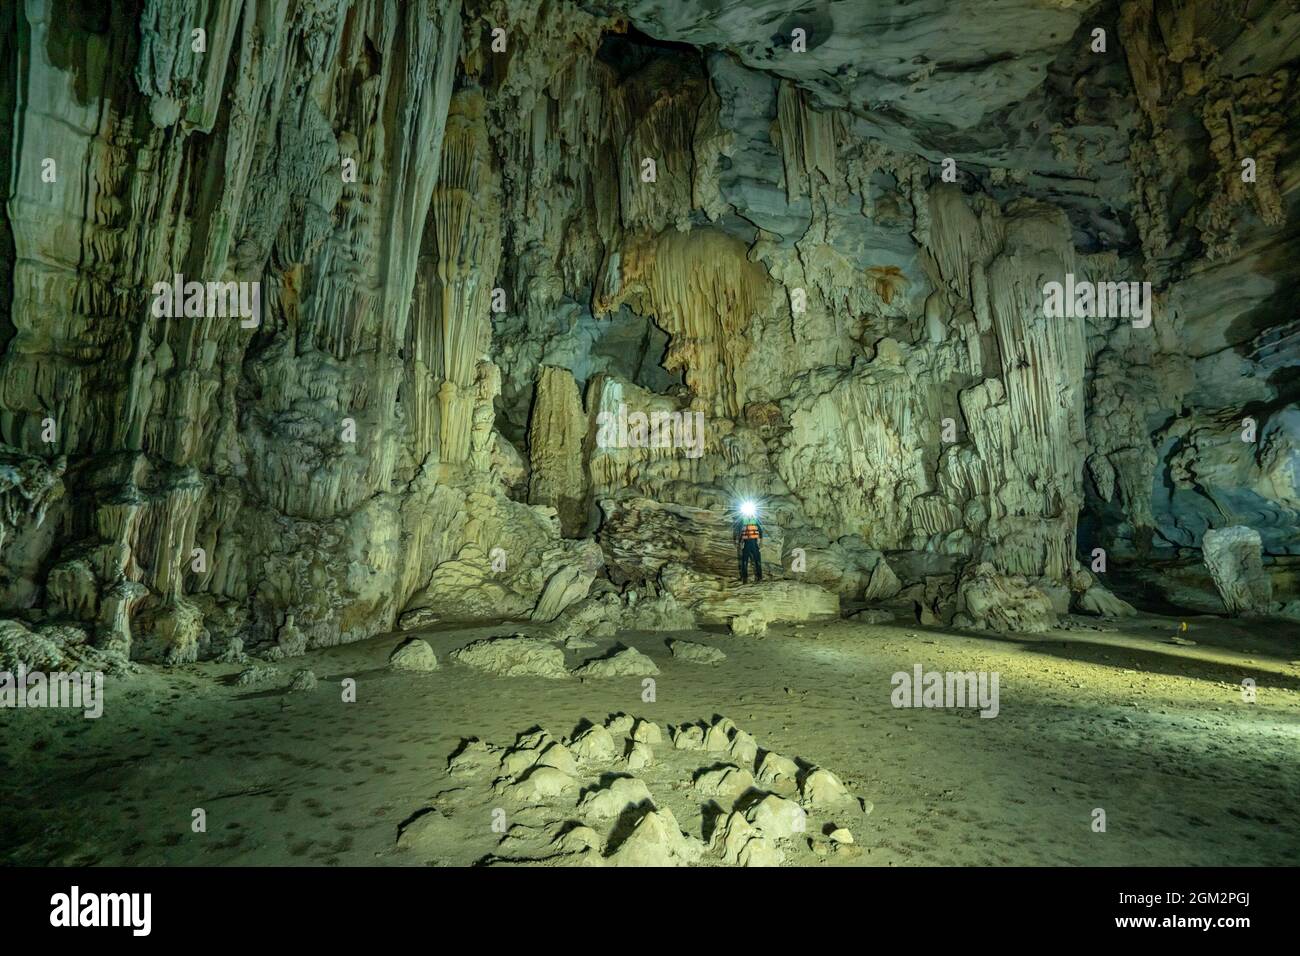 Visite d'exploration de la grotte de tu LAN, Quang Binh, Vietnam Banque D'Images